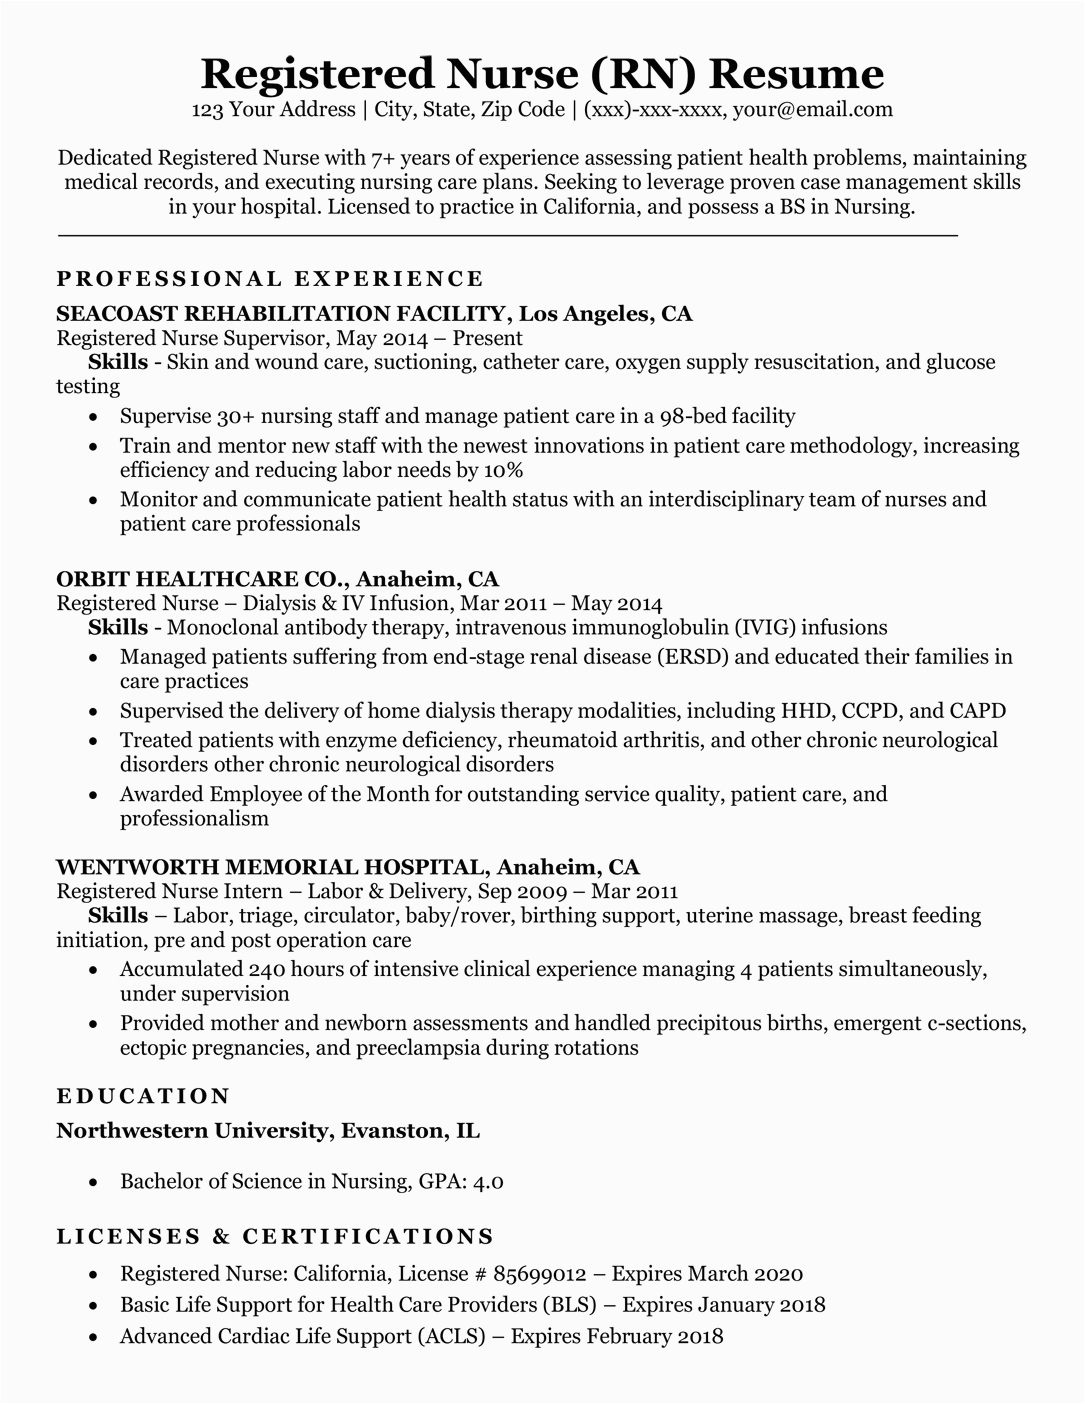 Sample Resume for A Nurse Position Registered Nurse Rn Resume Sample & Tips